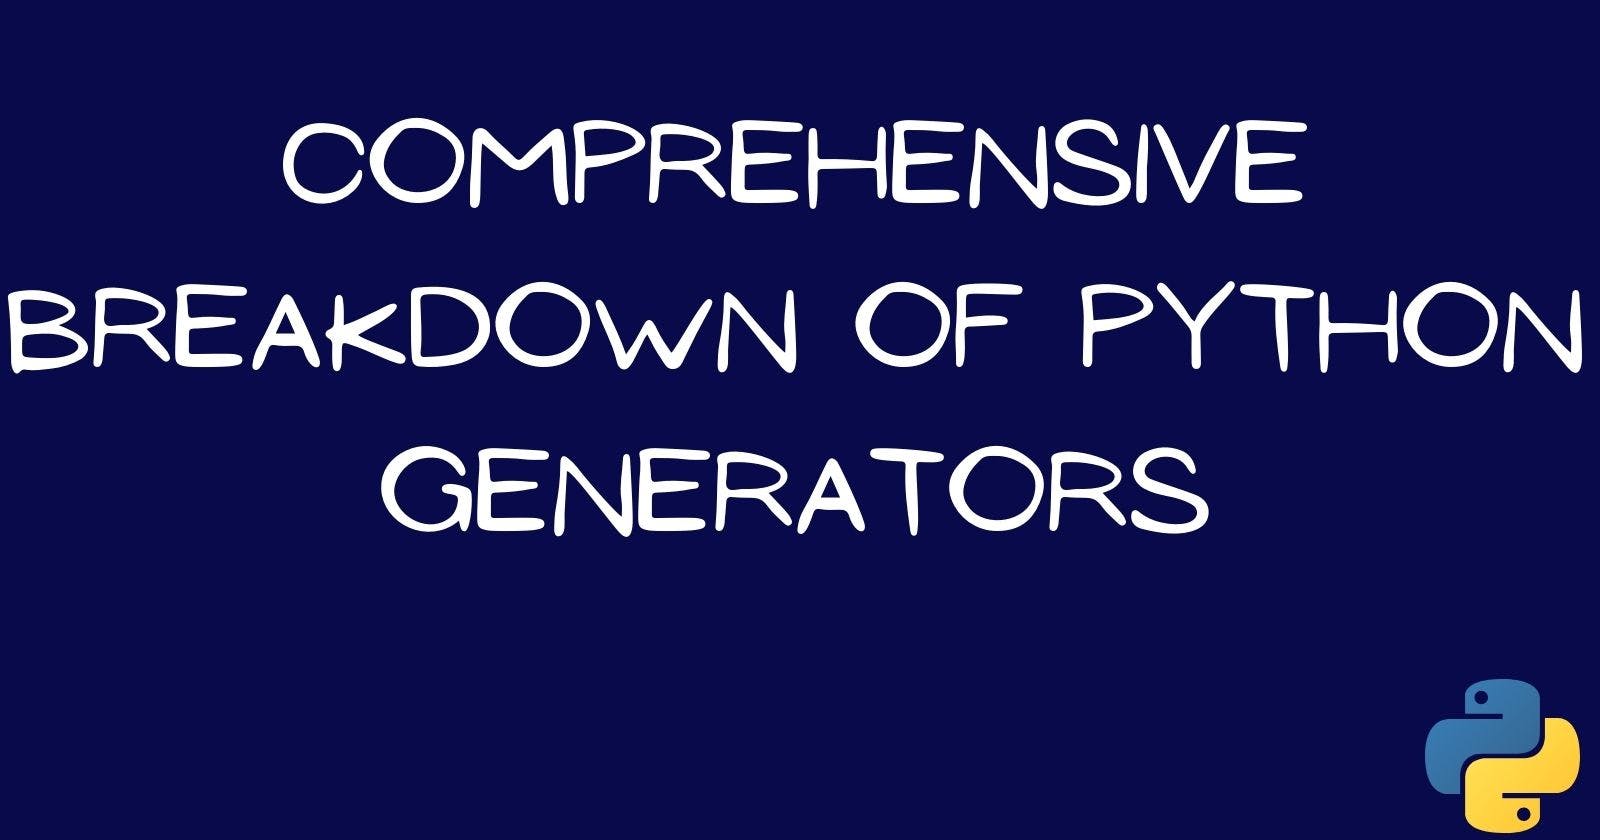 Comprehensive Breakdown of Python Generators